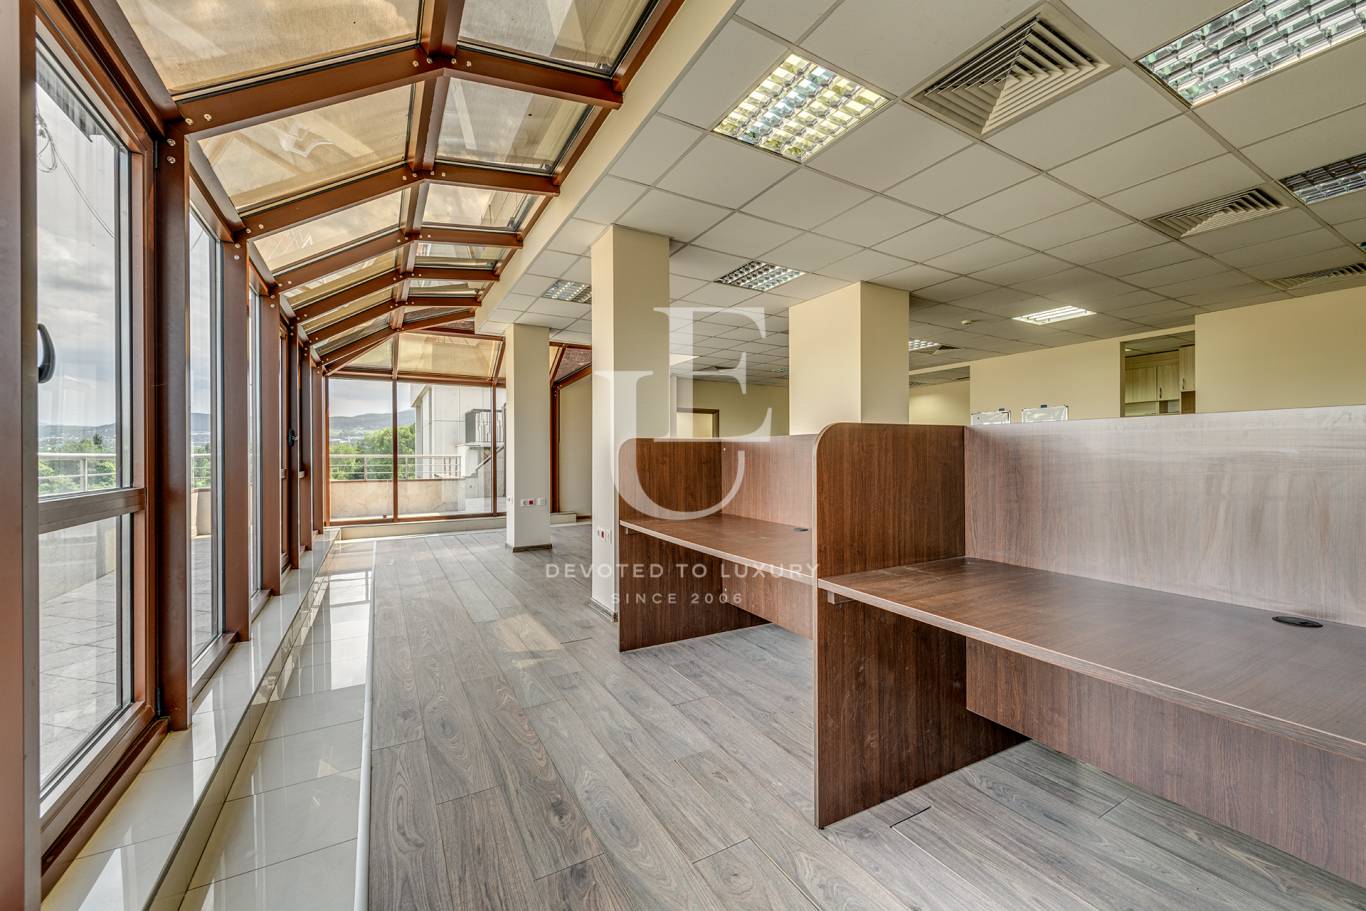 Офис под наем в София, Студентски град - код на имота: N17700 - image 5